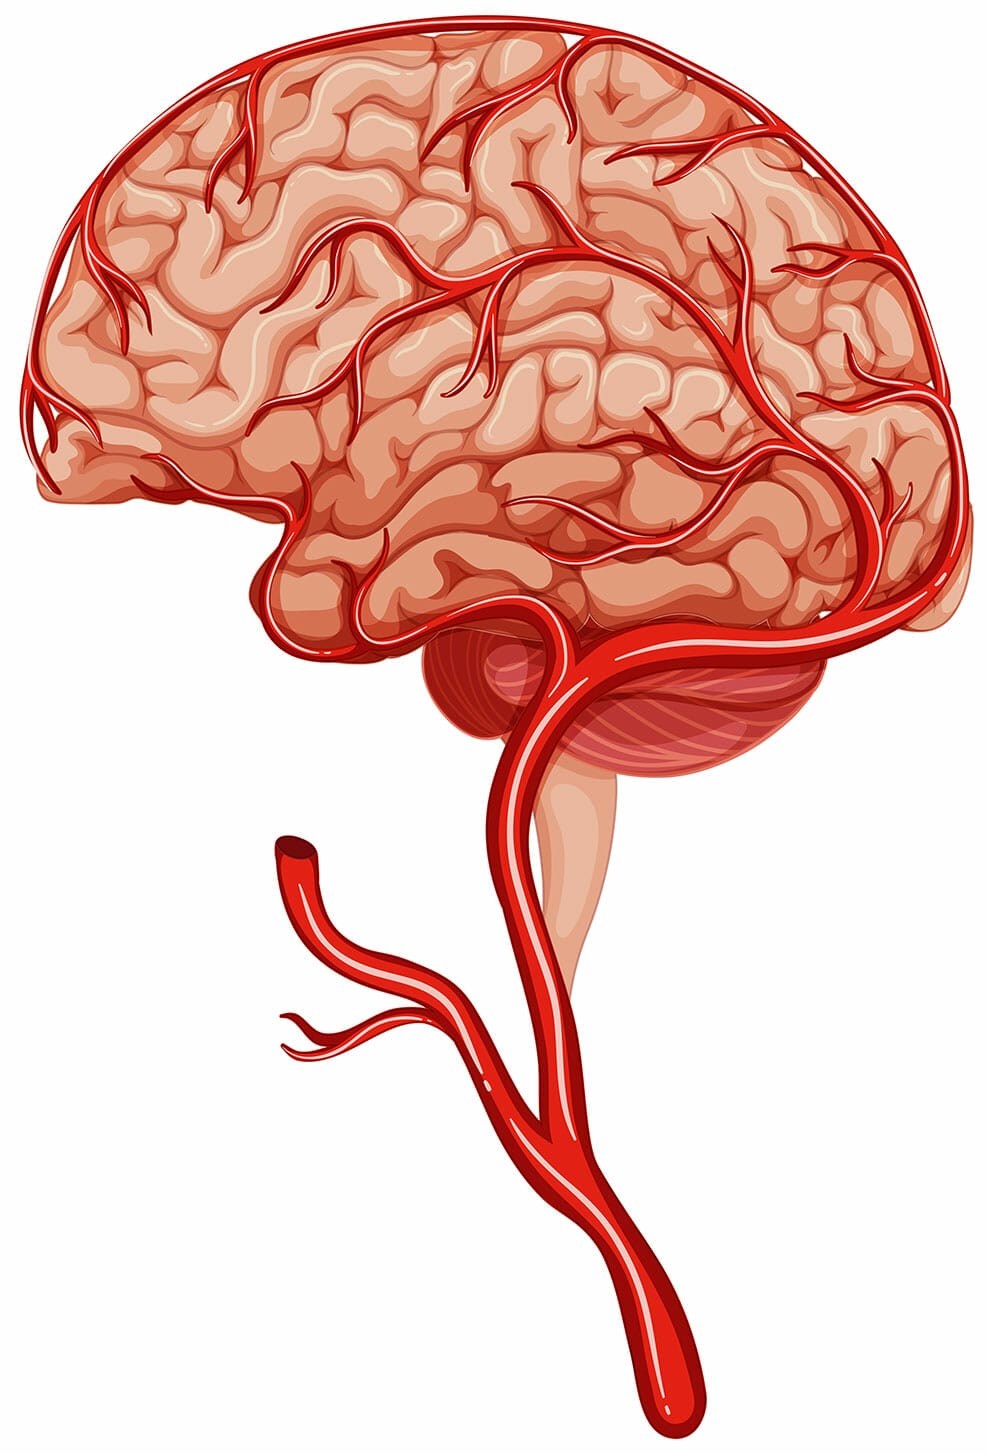 หลอดเลือดสมองตีบ เส้นเลือดตีบ